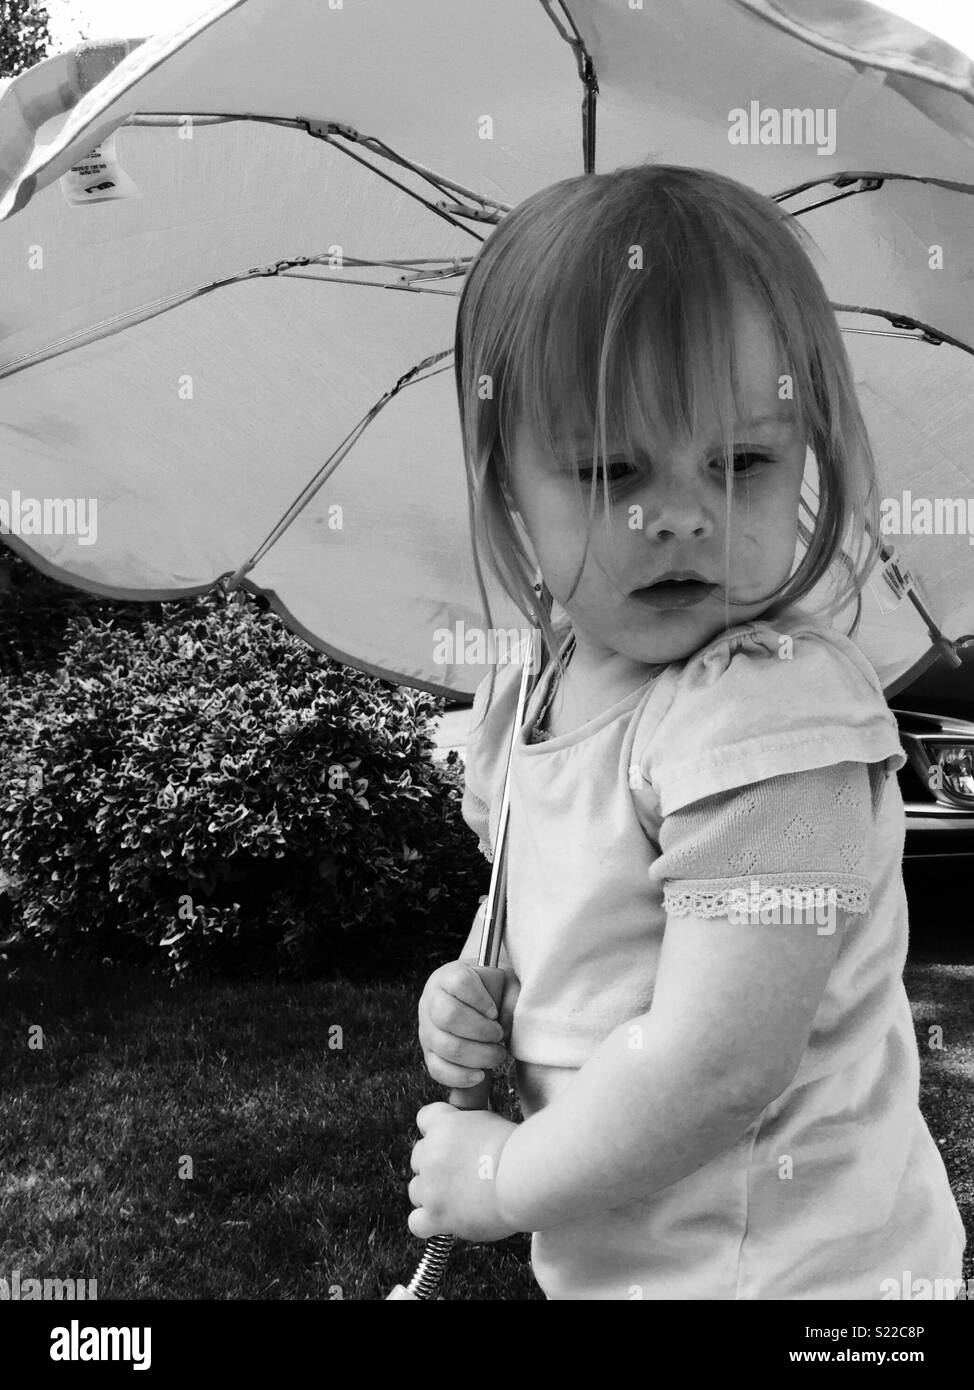 Regenschirm kind Schwarzweiß-Stockfotos und -bilder - Alamy